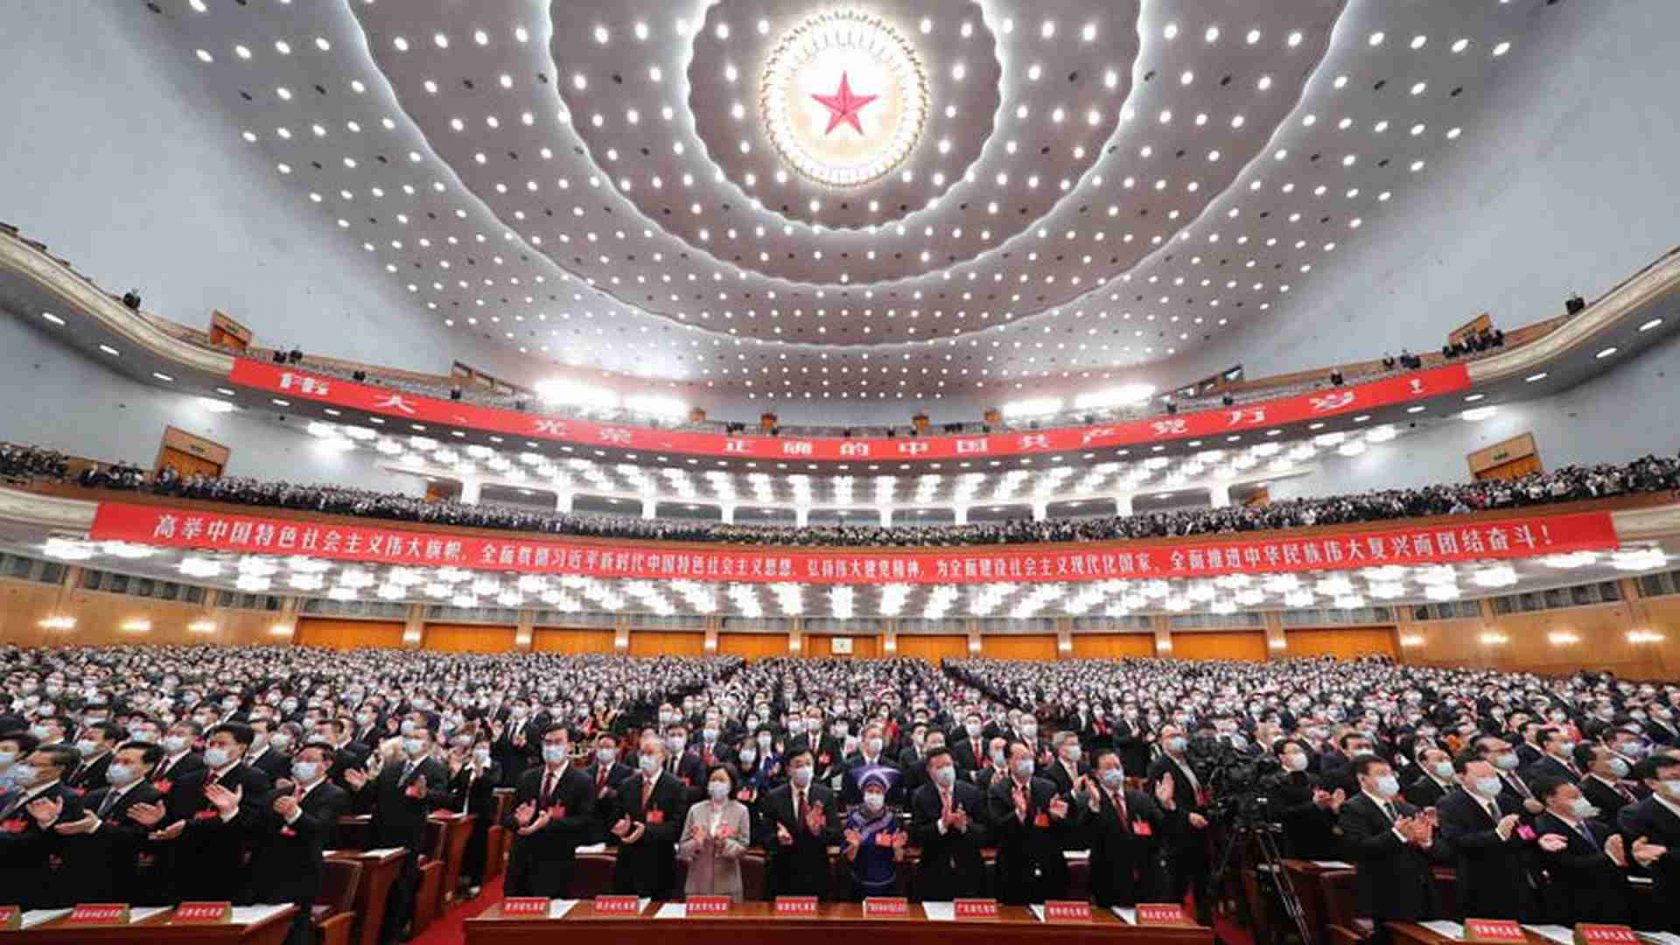 Ambizioso e autoritario, Xi Jinping non cambia rotta